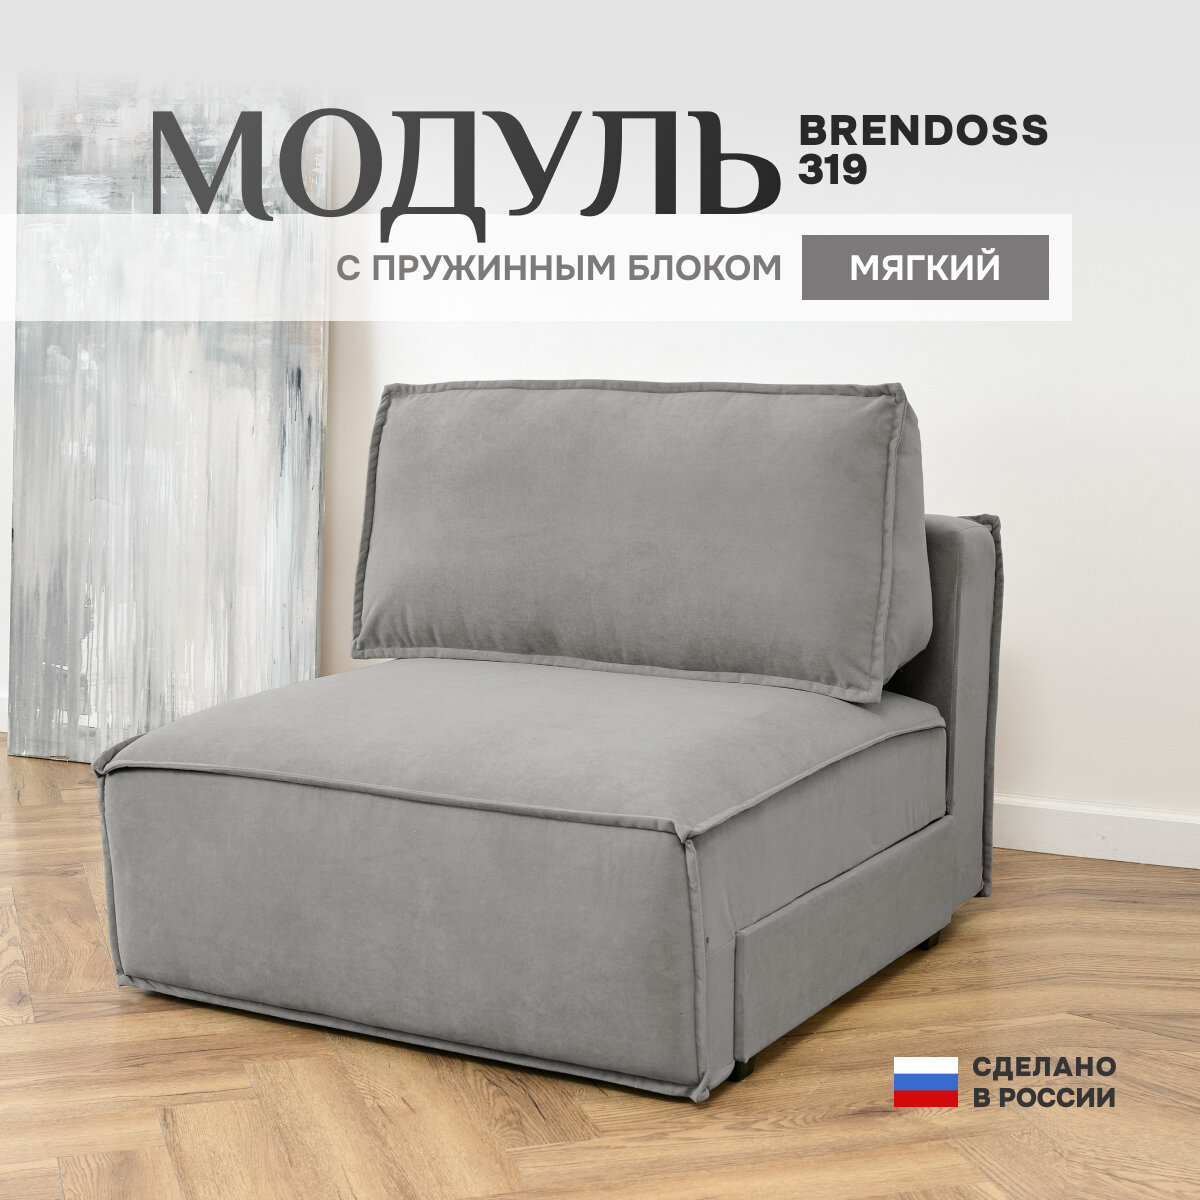 Модуль Brendoss 319 раскладной, в дополнение к дивану, механизм клик-кляк, материал износостойкий велюр, цвет серый, 100х120х89 см